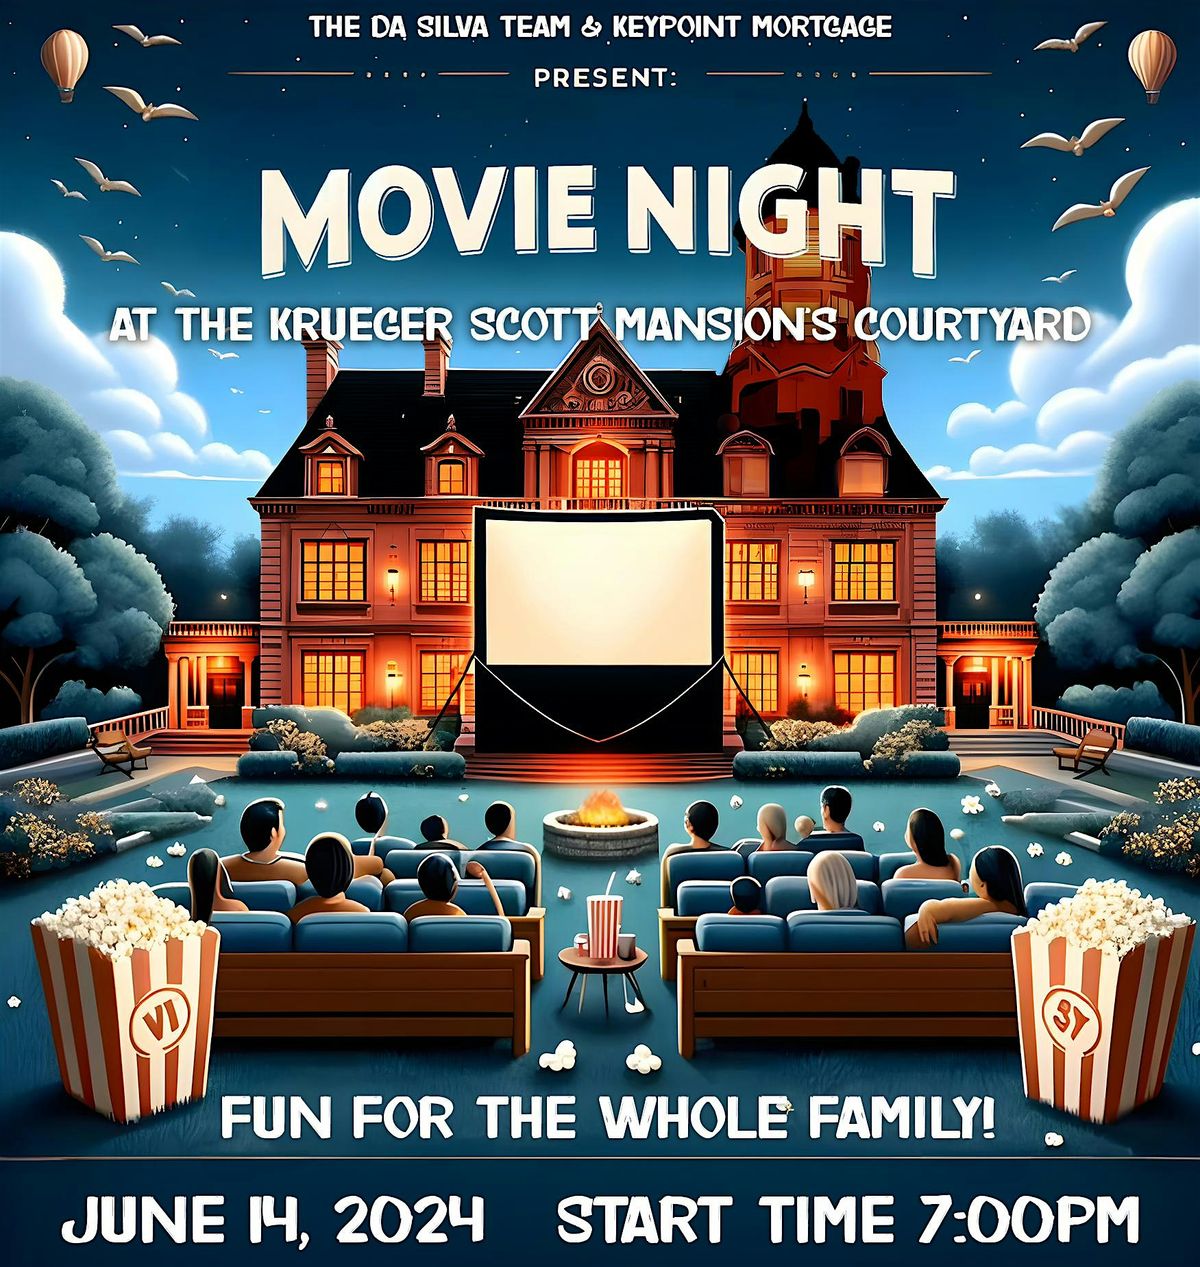 Movie Night at the Krueger-Scott Mansion Courtyard